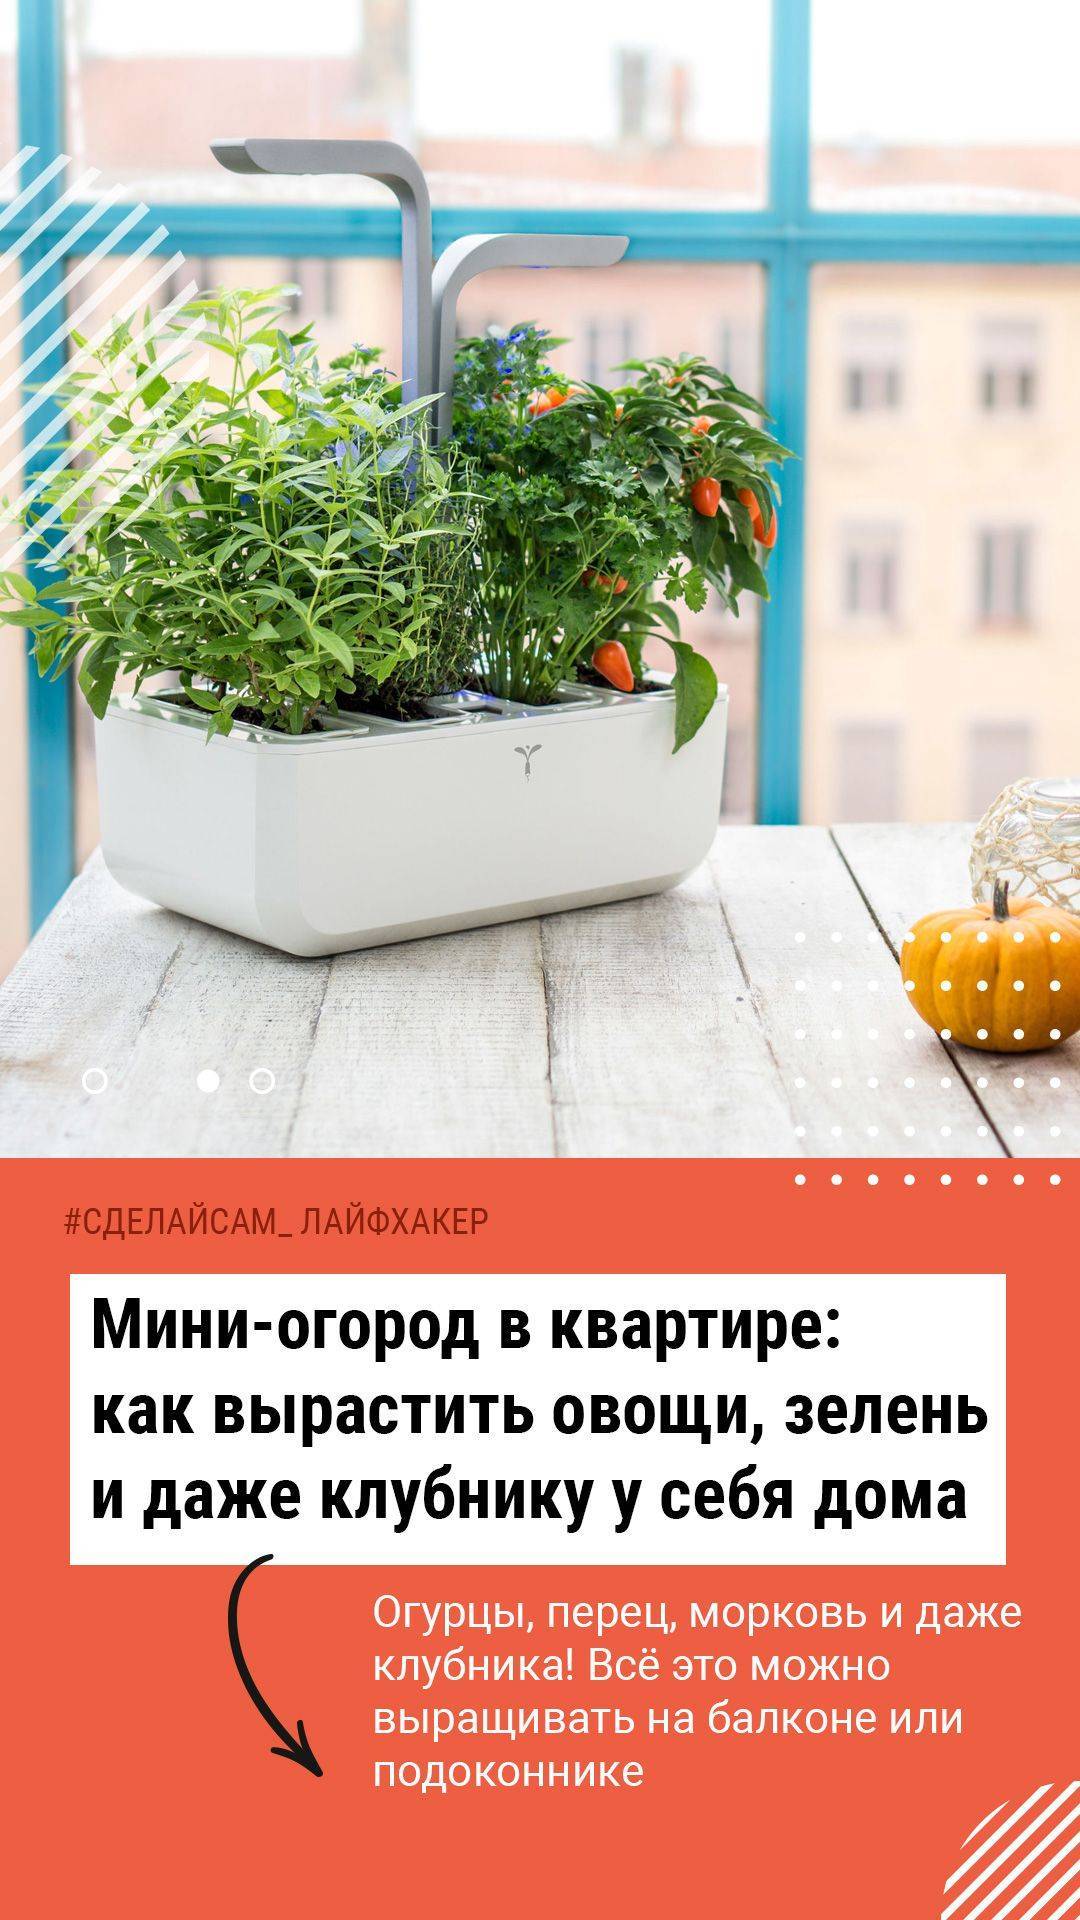 Огород на подоконнике: что полезного и вкусного можно вырастить у себя дома